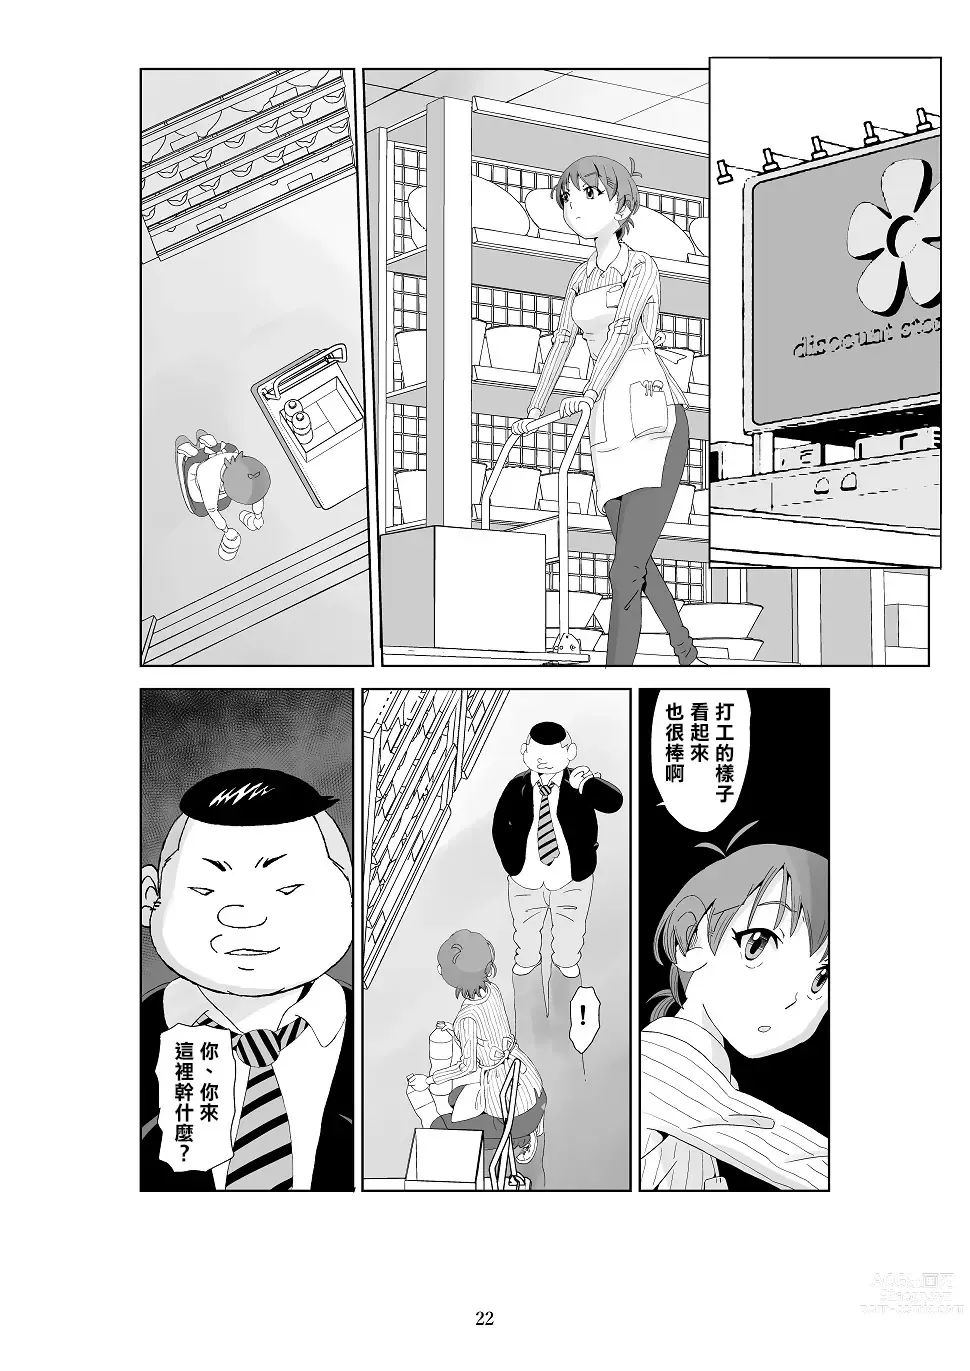 Page 24 of doujinshi Futoshi 3